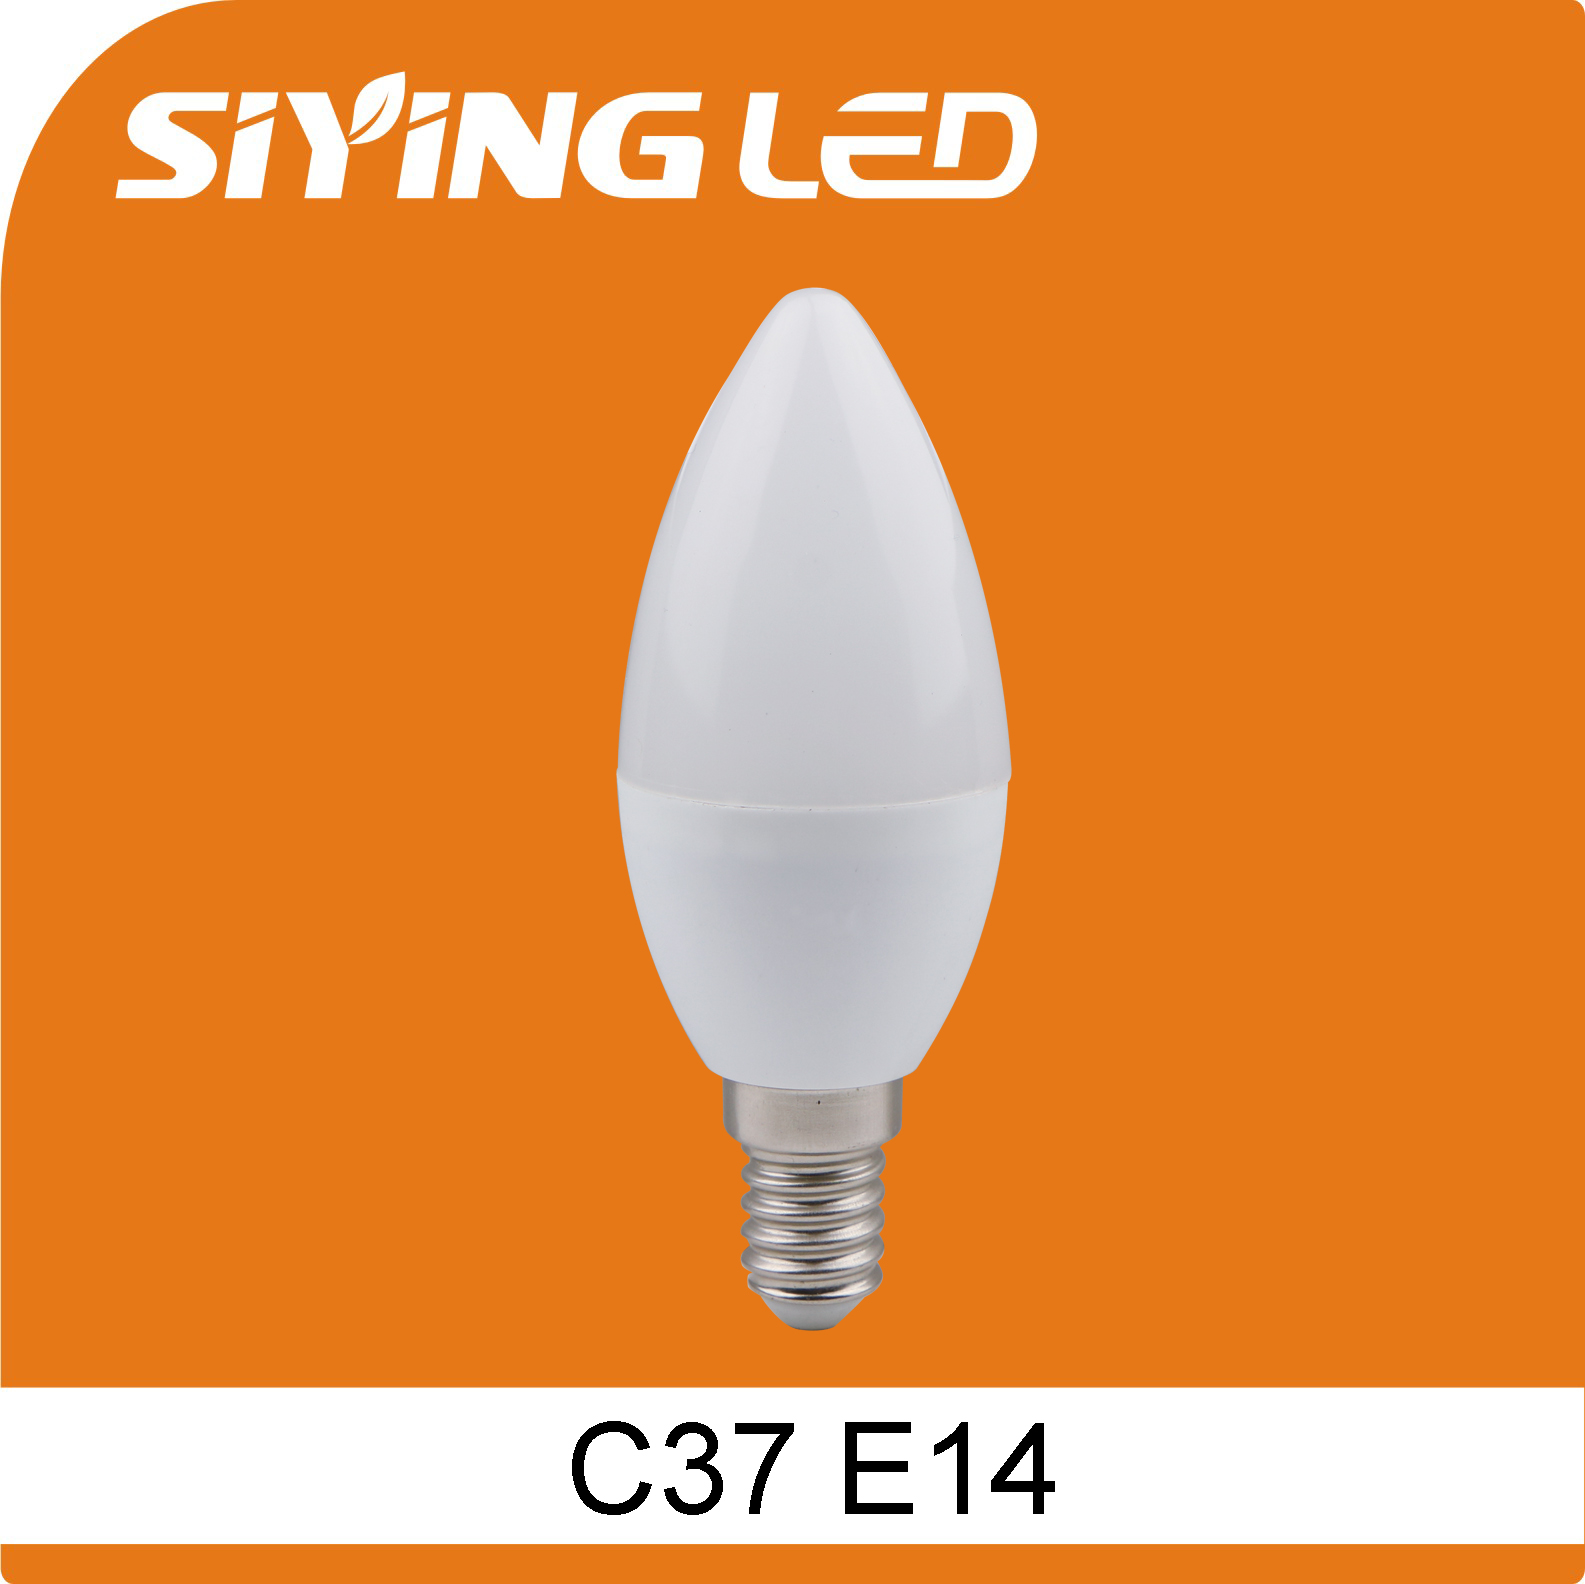 思颖 E14 C37 冲压铝球泡 LED蜡烛灯